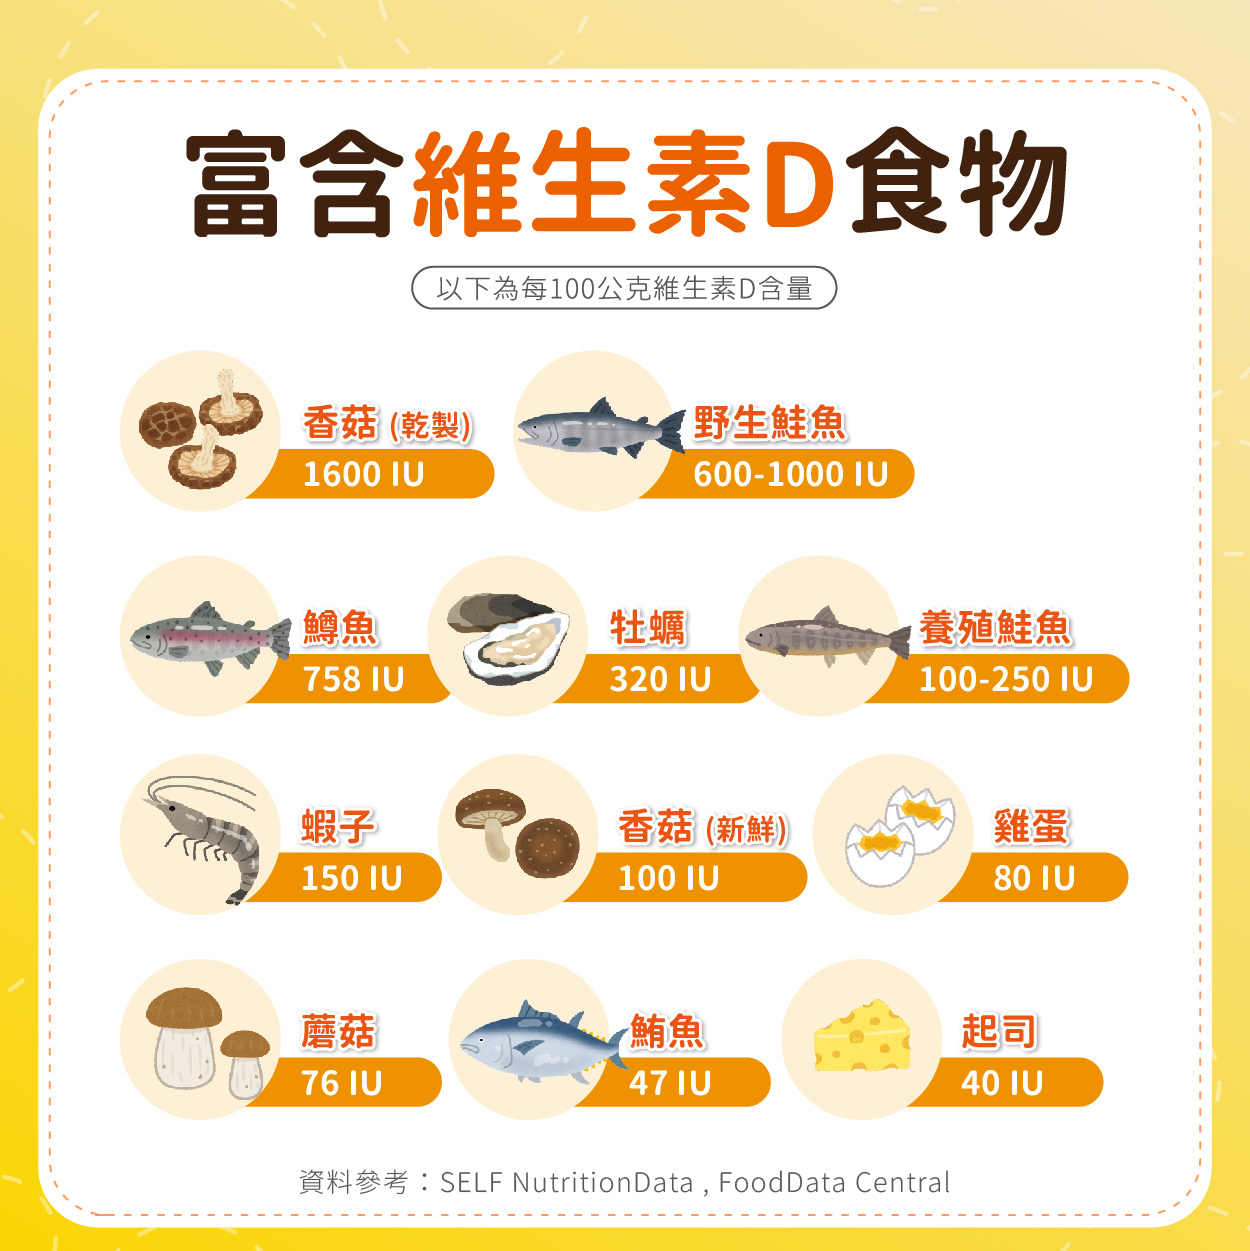 富含維生素D的食物，包含乾製香菇（1600IU）、野生鮭魚（600-1000IU）、鱒魚（758IU）、牡蠣（320IU）、養殖鮭魚（100-250IU）、蝦子（150IU）、新鮮香菇（100IU）、雞蛋（80IU）、蘑菇（76IU）、鮪魚（47IU）、起司（40IU）